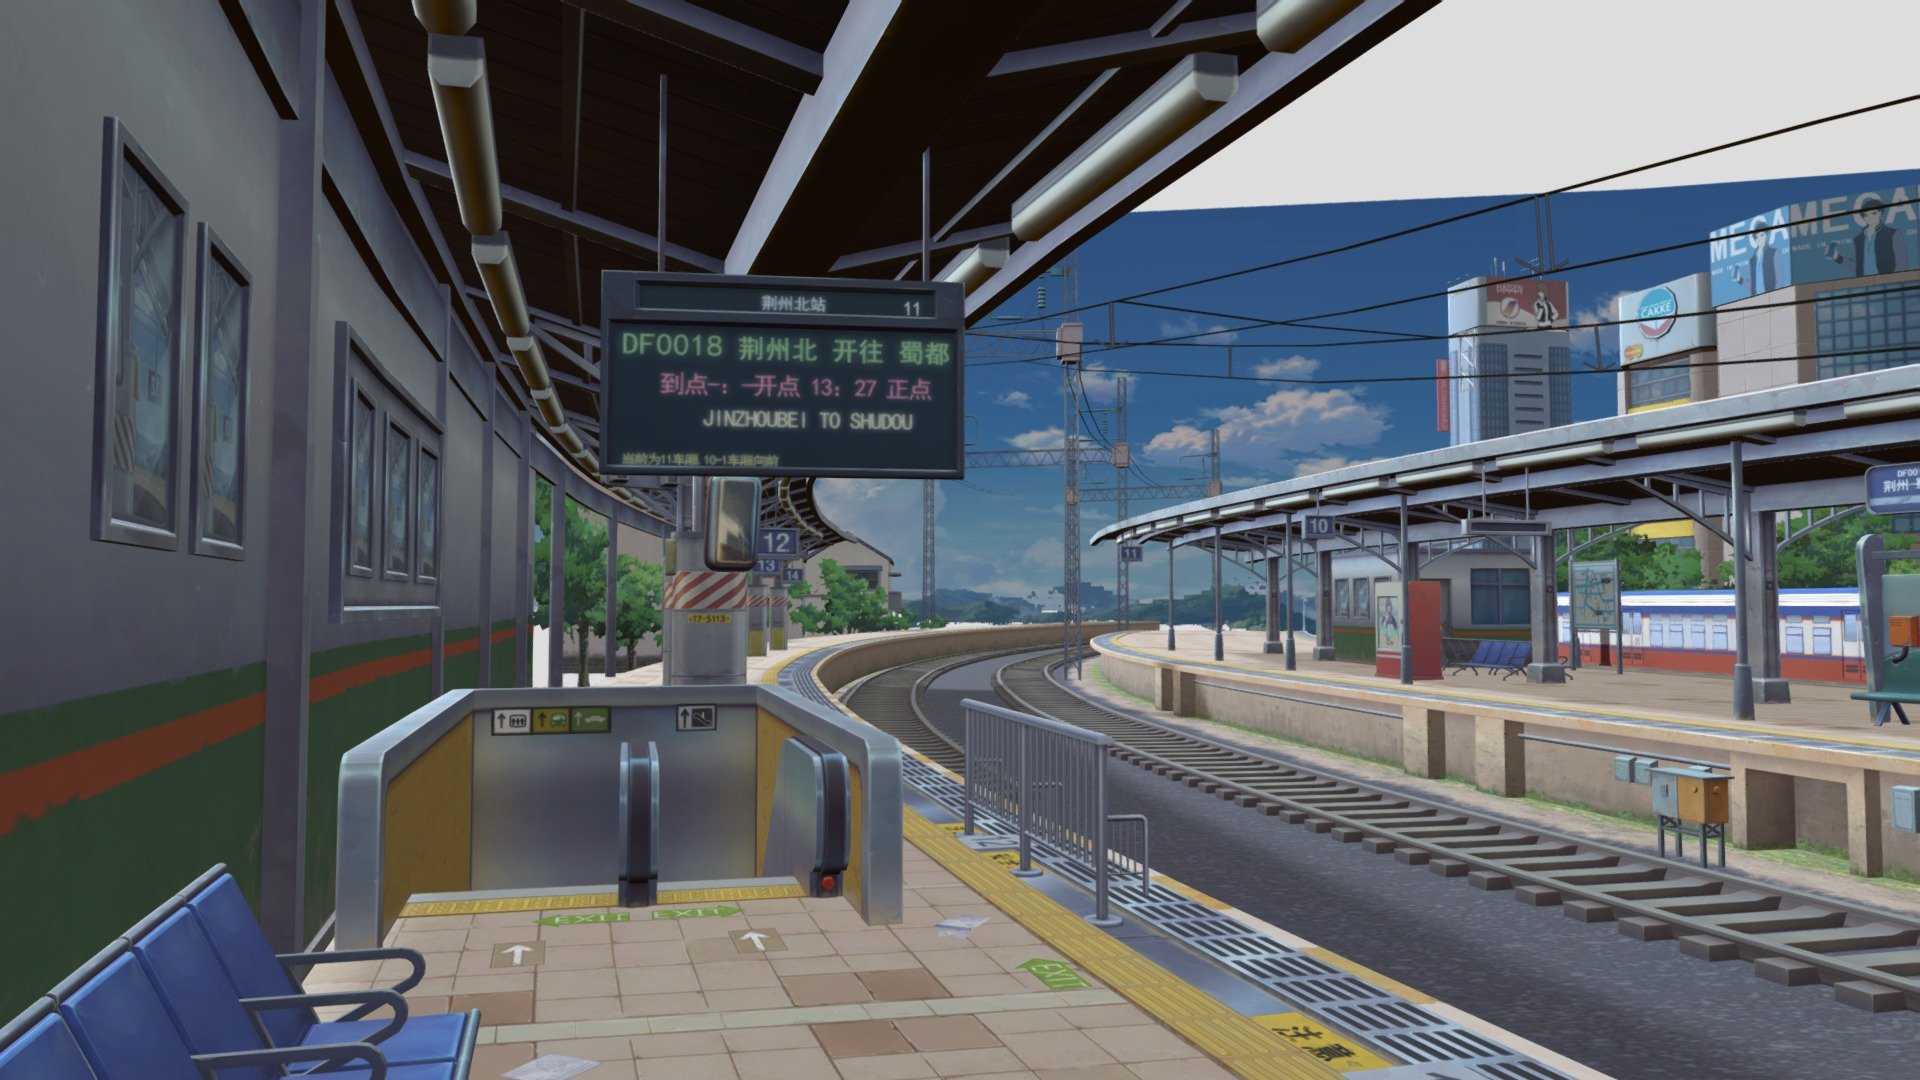 Train Station Model for Mobile Game - Train Station Model for Mobile Game - 3D model by zangagames.com 3d model